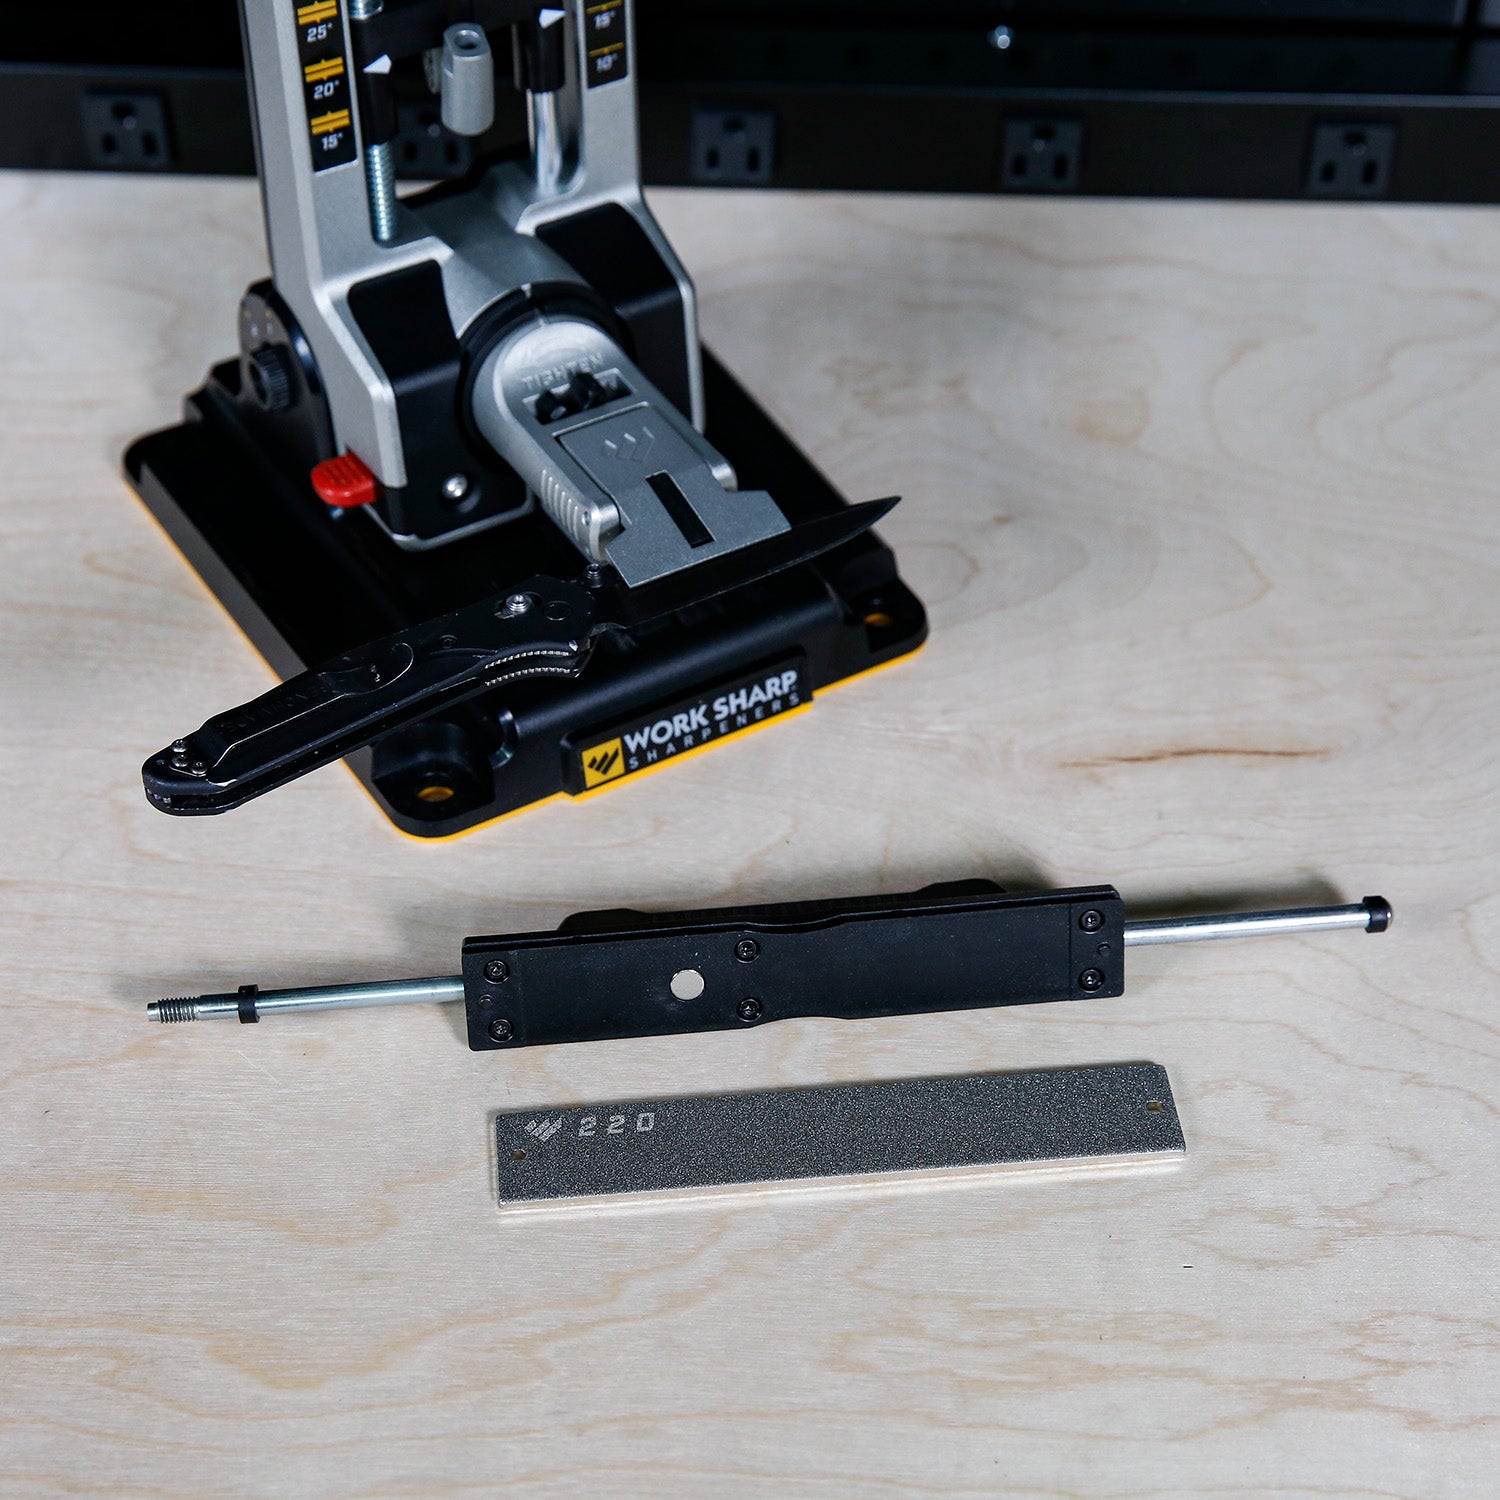 Work Sharp Professional Precision Adjust Knife Sharpener Review 